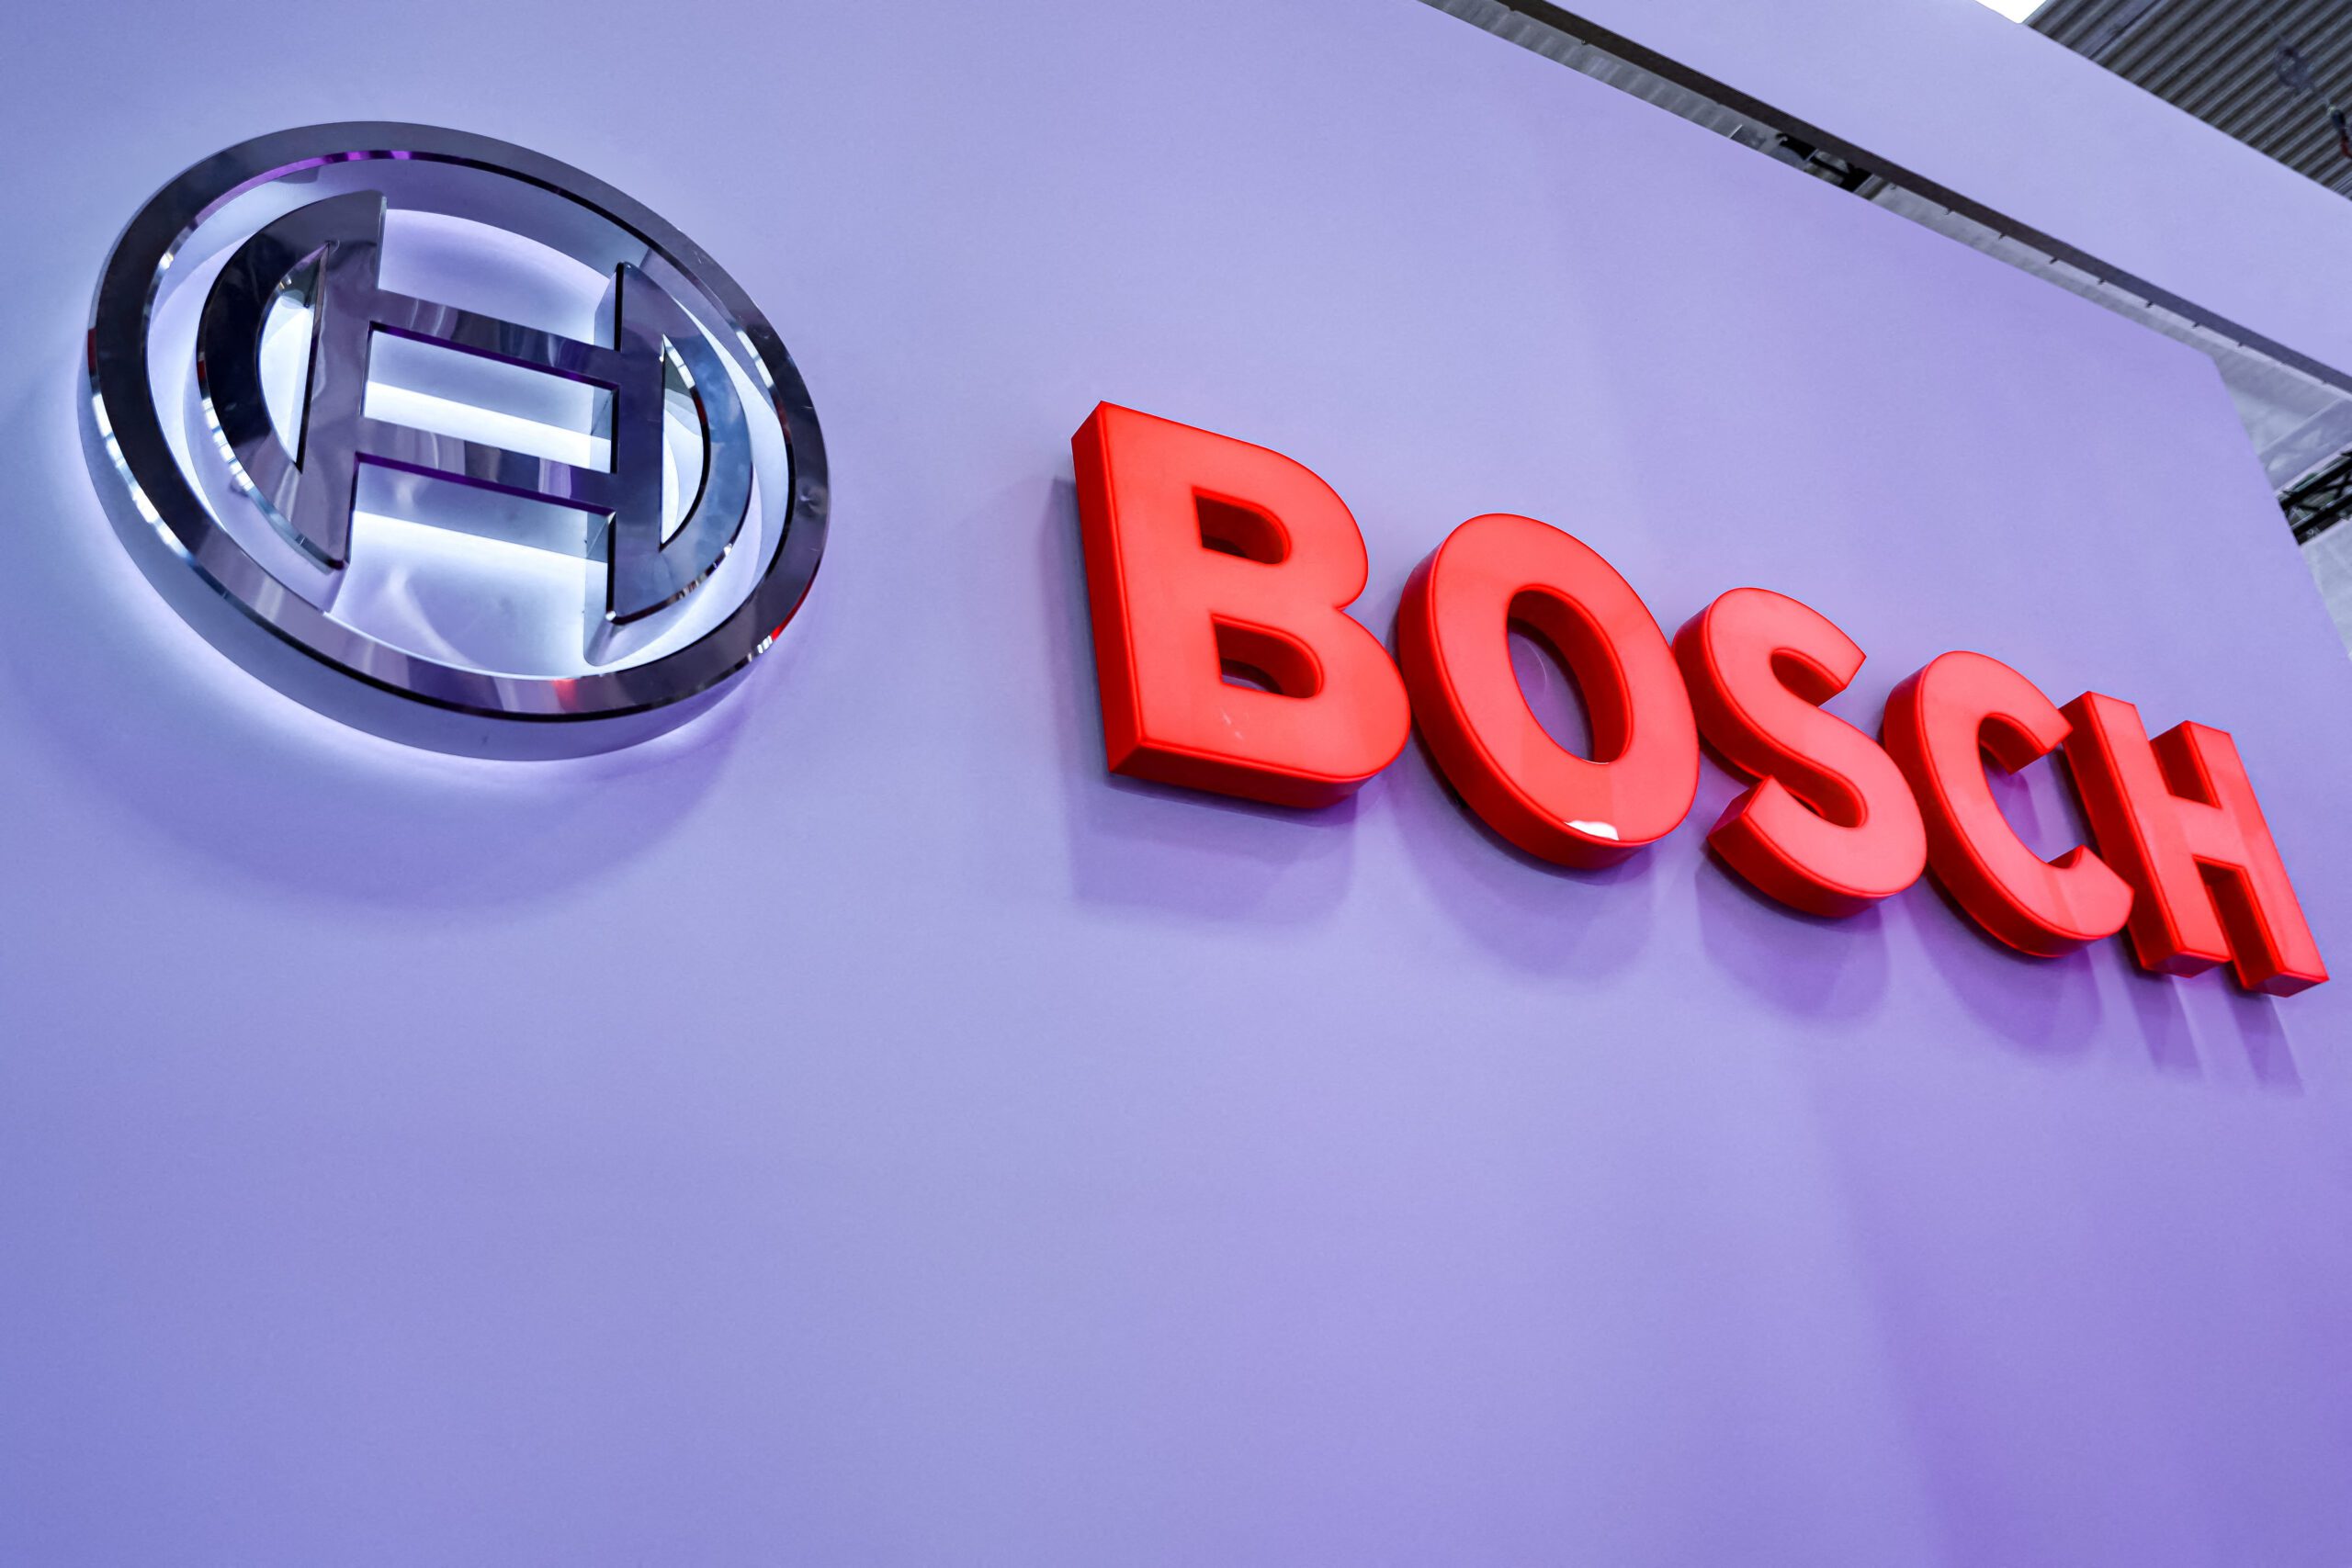 Bosch weighs offer for appliance maker Whirlpool